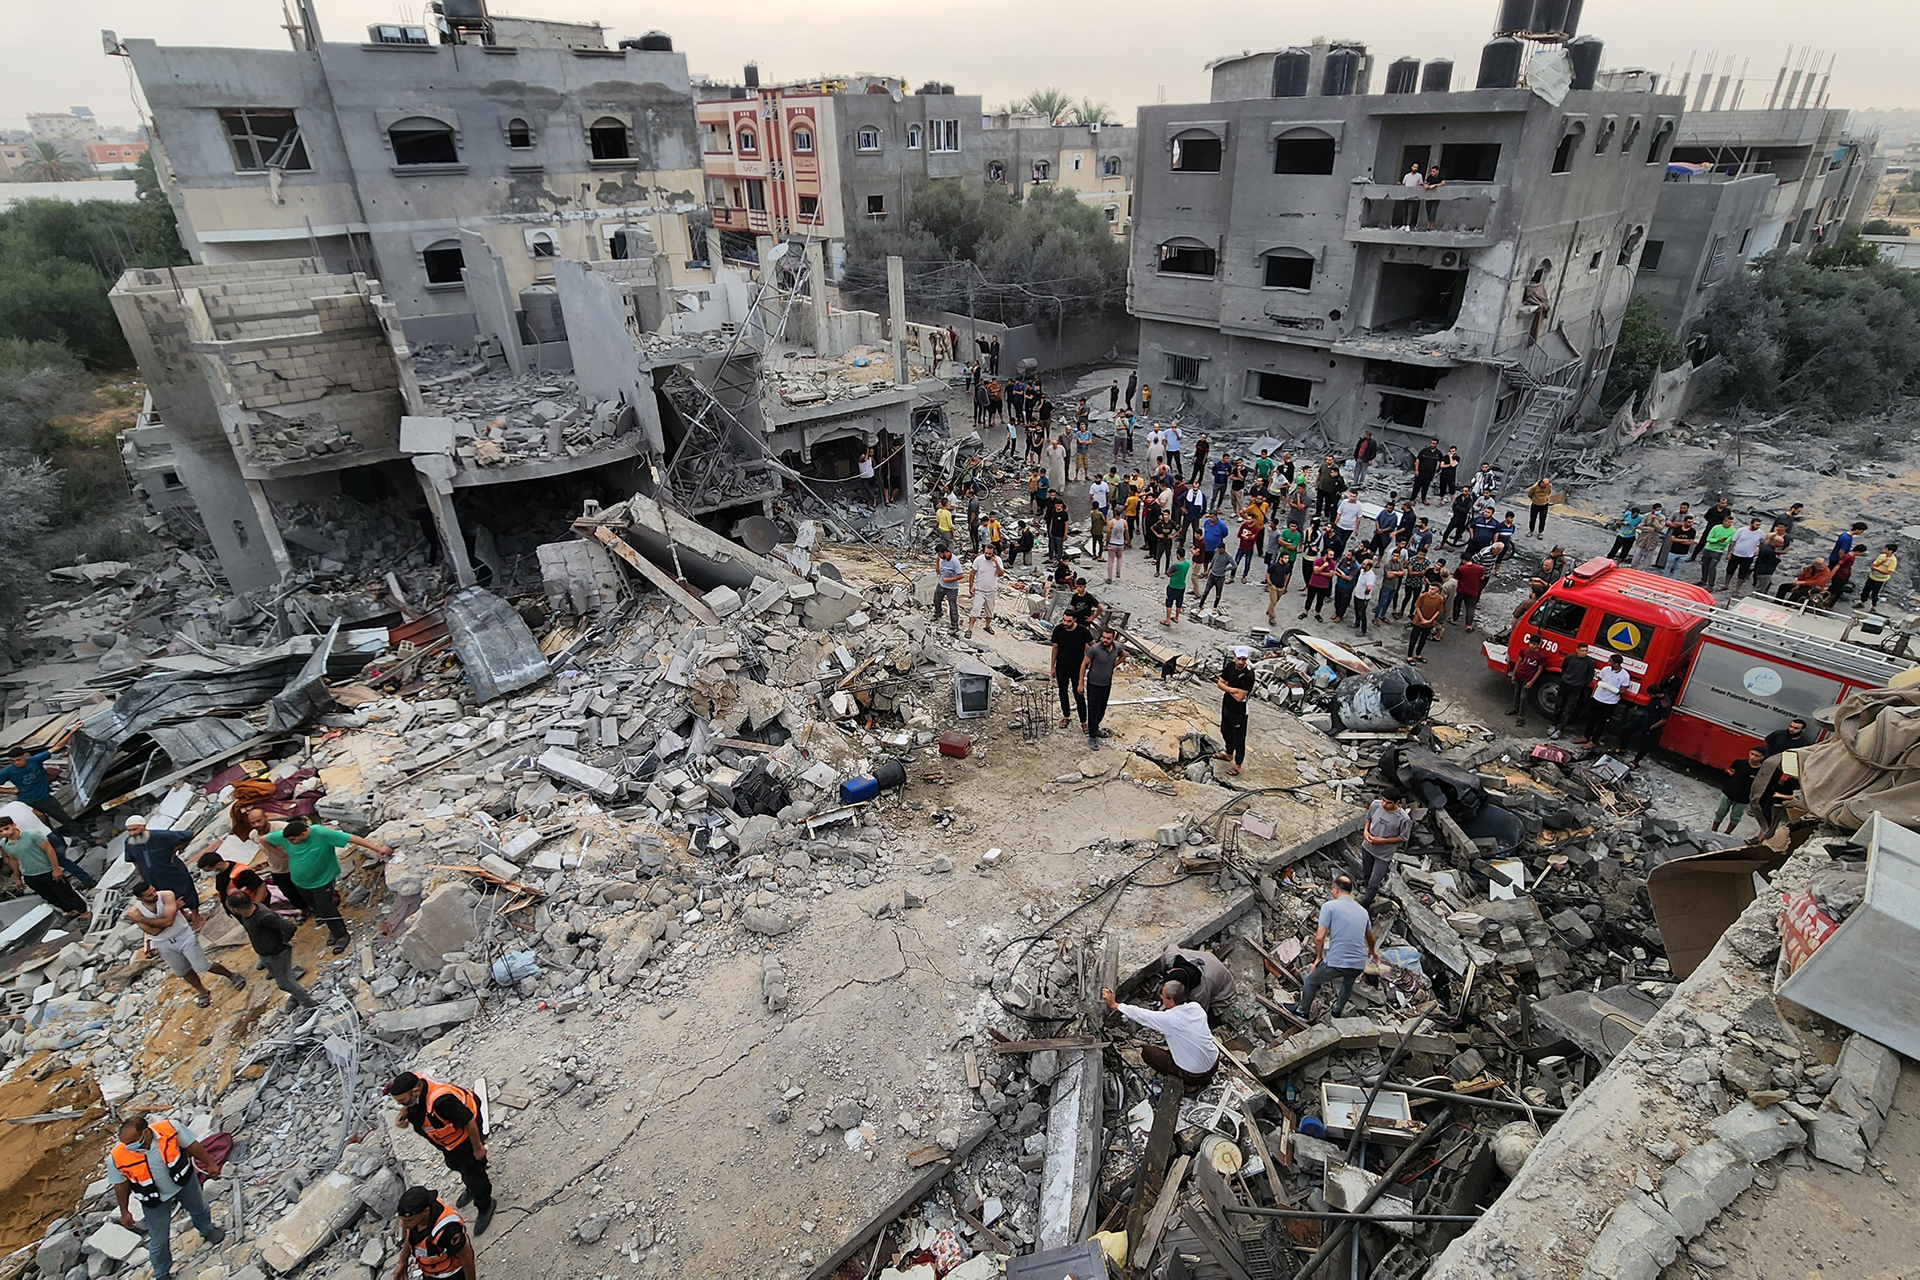 محلل إسرائيلي: 5 أسباب تمنع “تسوية غزة” بالأرض من الجو | أخبار – البوكس نيوز